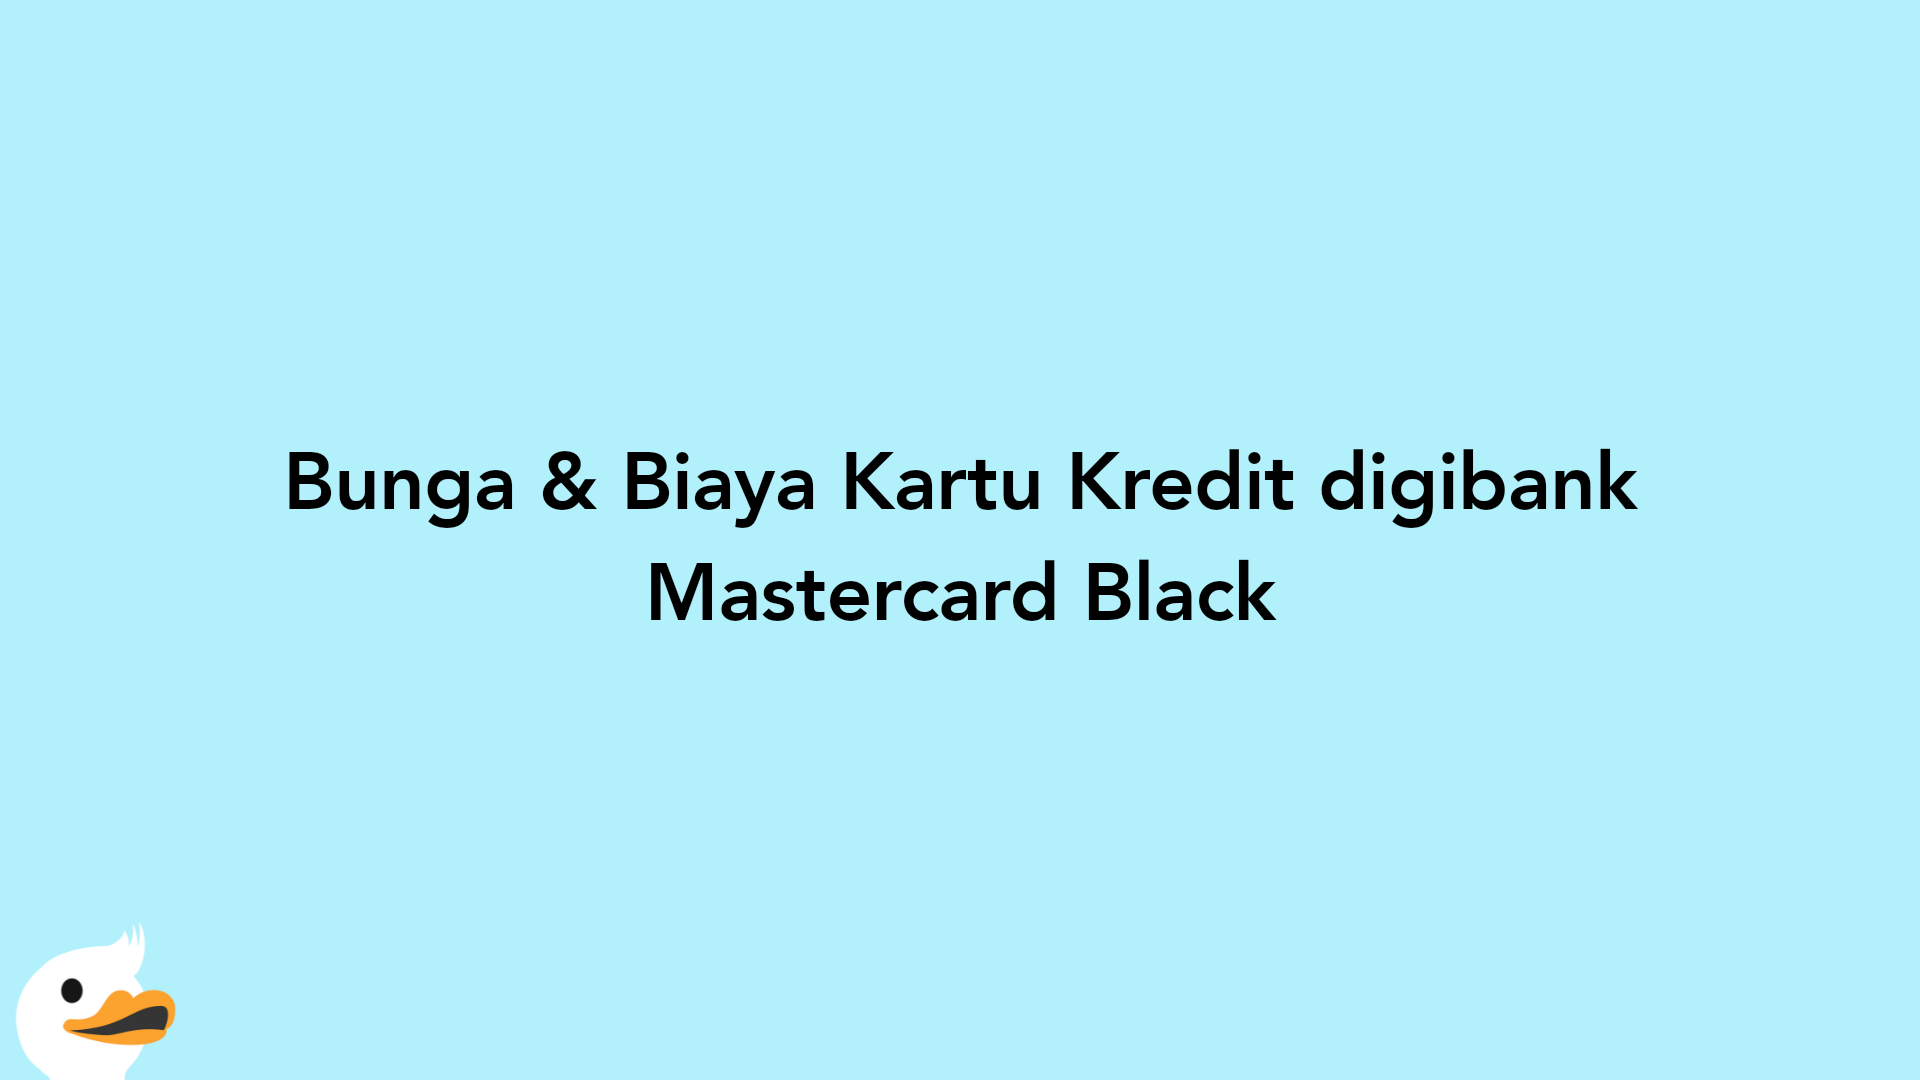 Bunga & Biaya Kartu Kredit digibank Mastercard Black